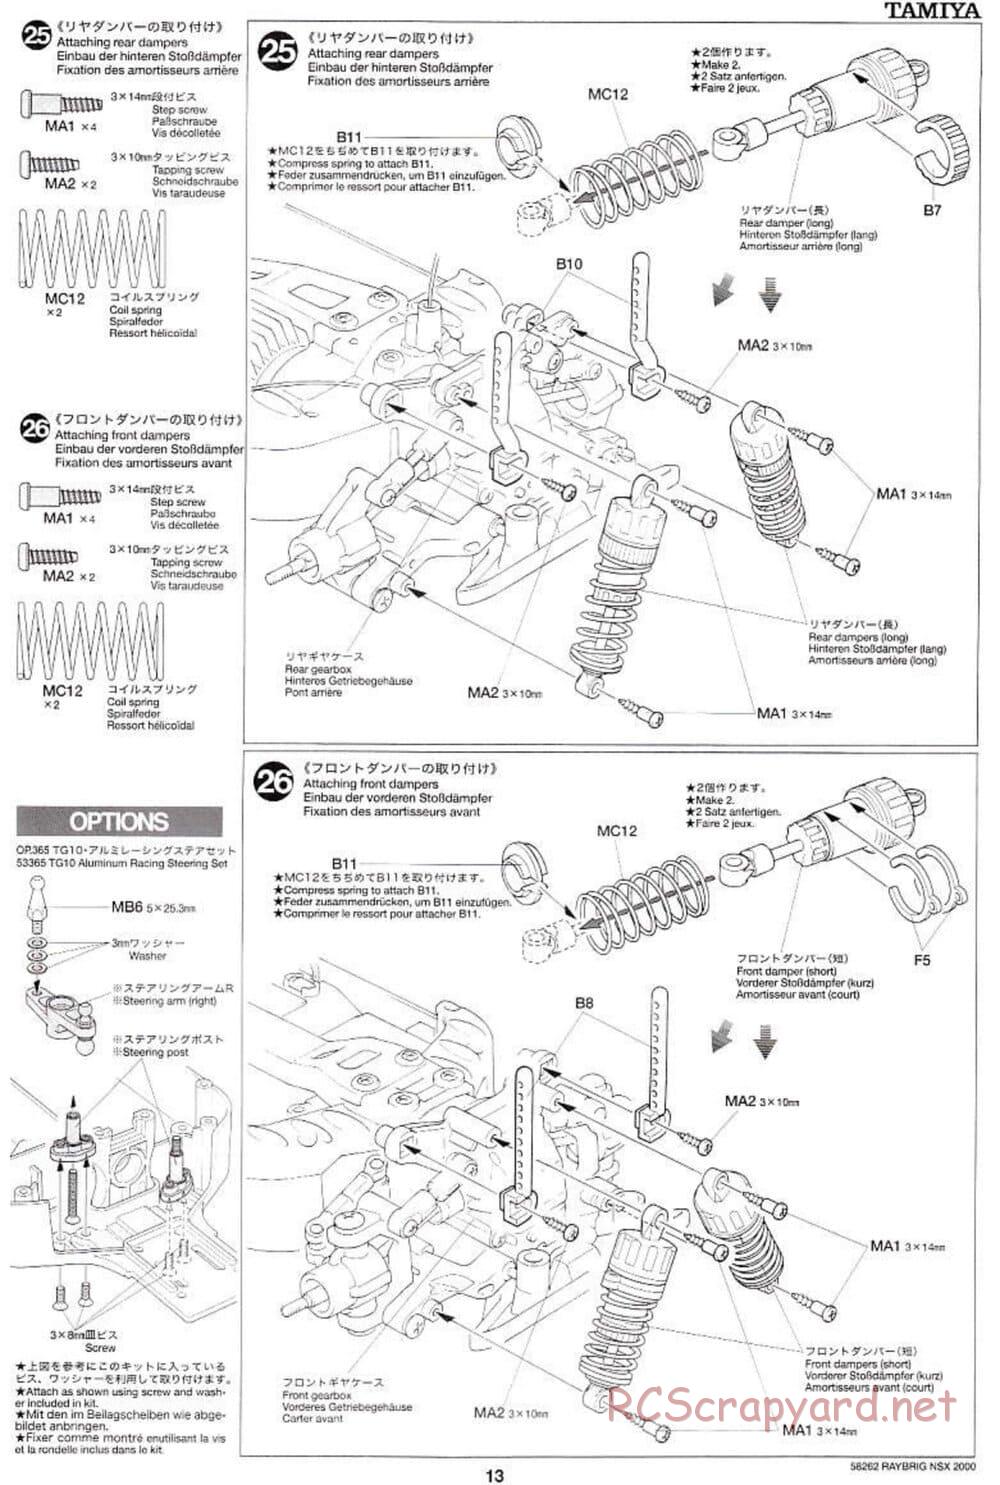 Tamiya - Raybrig NSX 2000 - TB-01 Chassis - Manual - Page 13